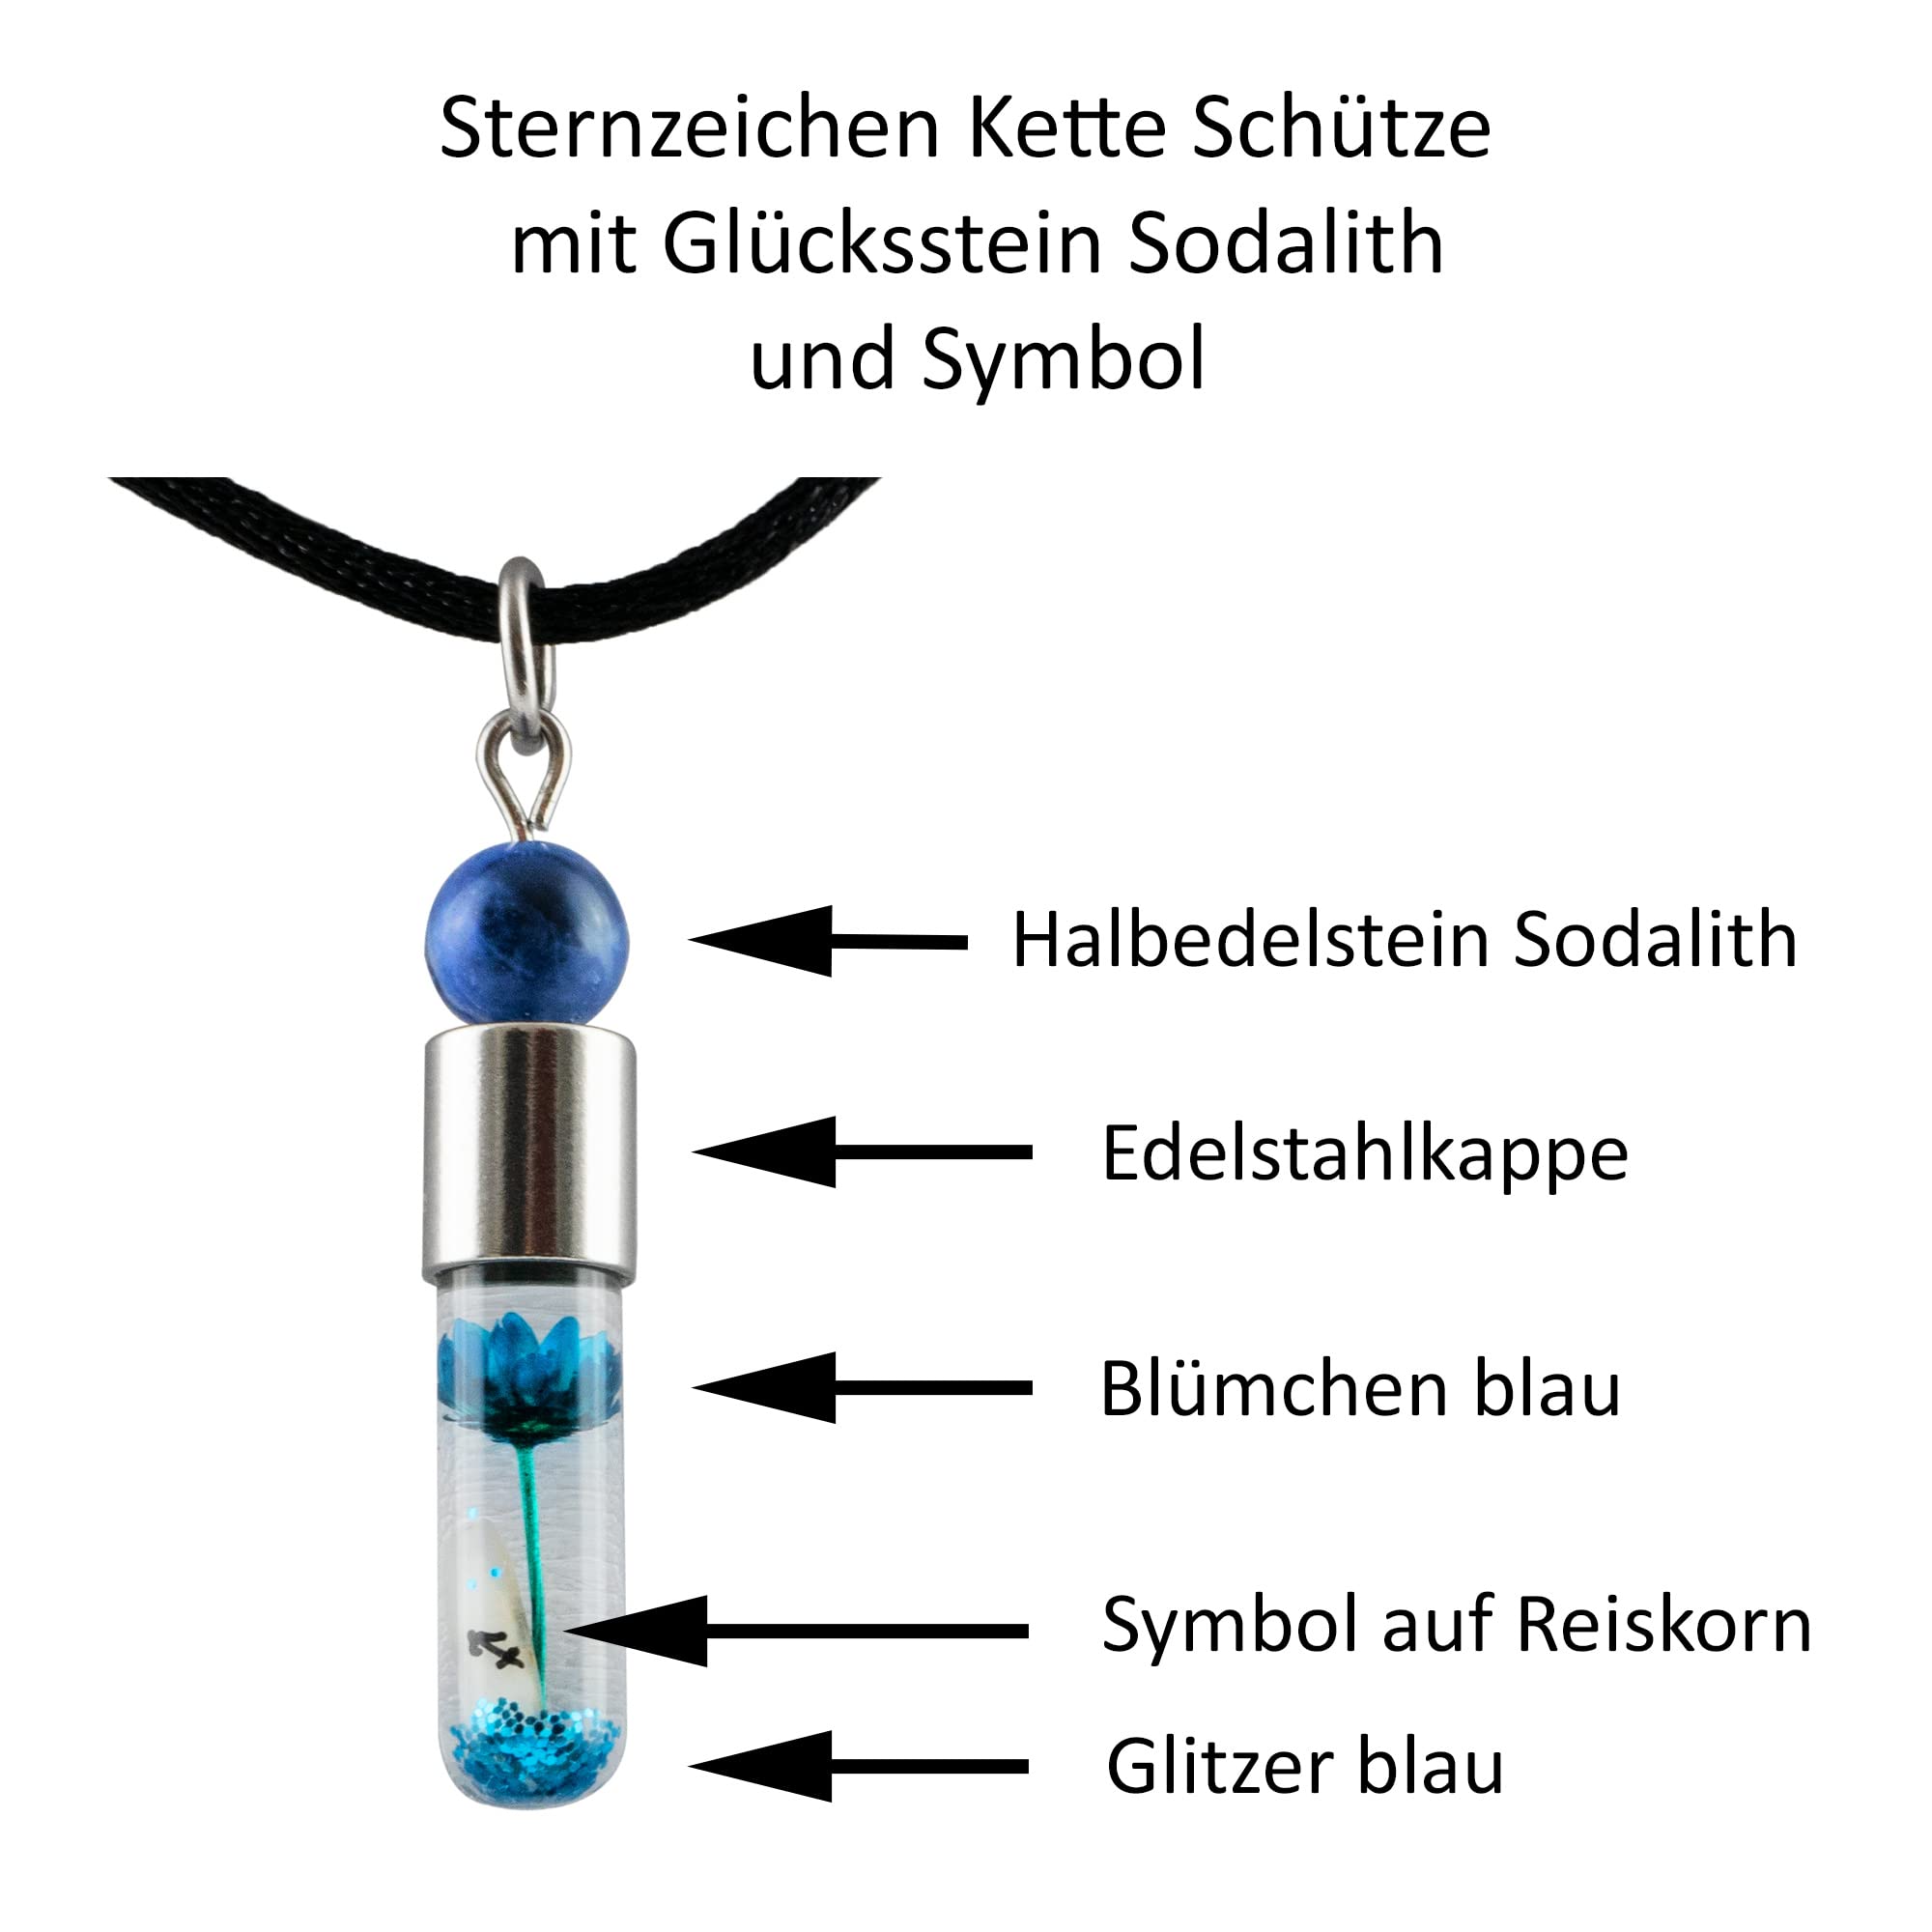 Sternzeichen Schütze, 23. November - 21. Dezember, Halskette mit Glückstein Sodalith und Sternzeichensymbol-2